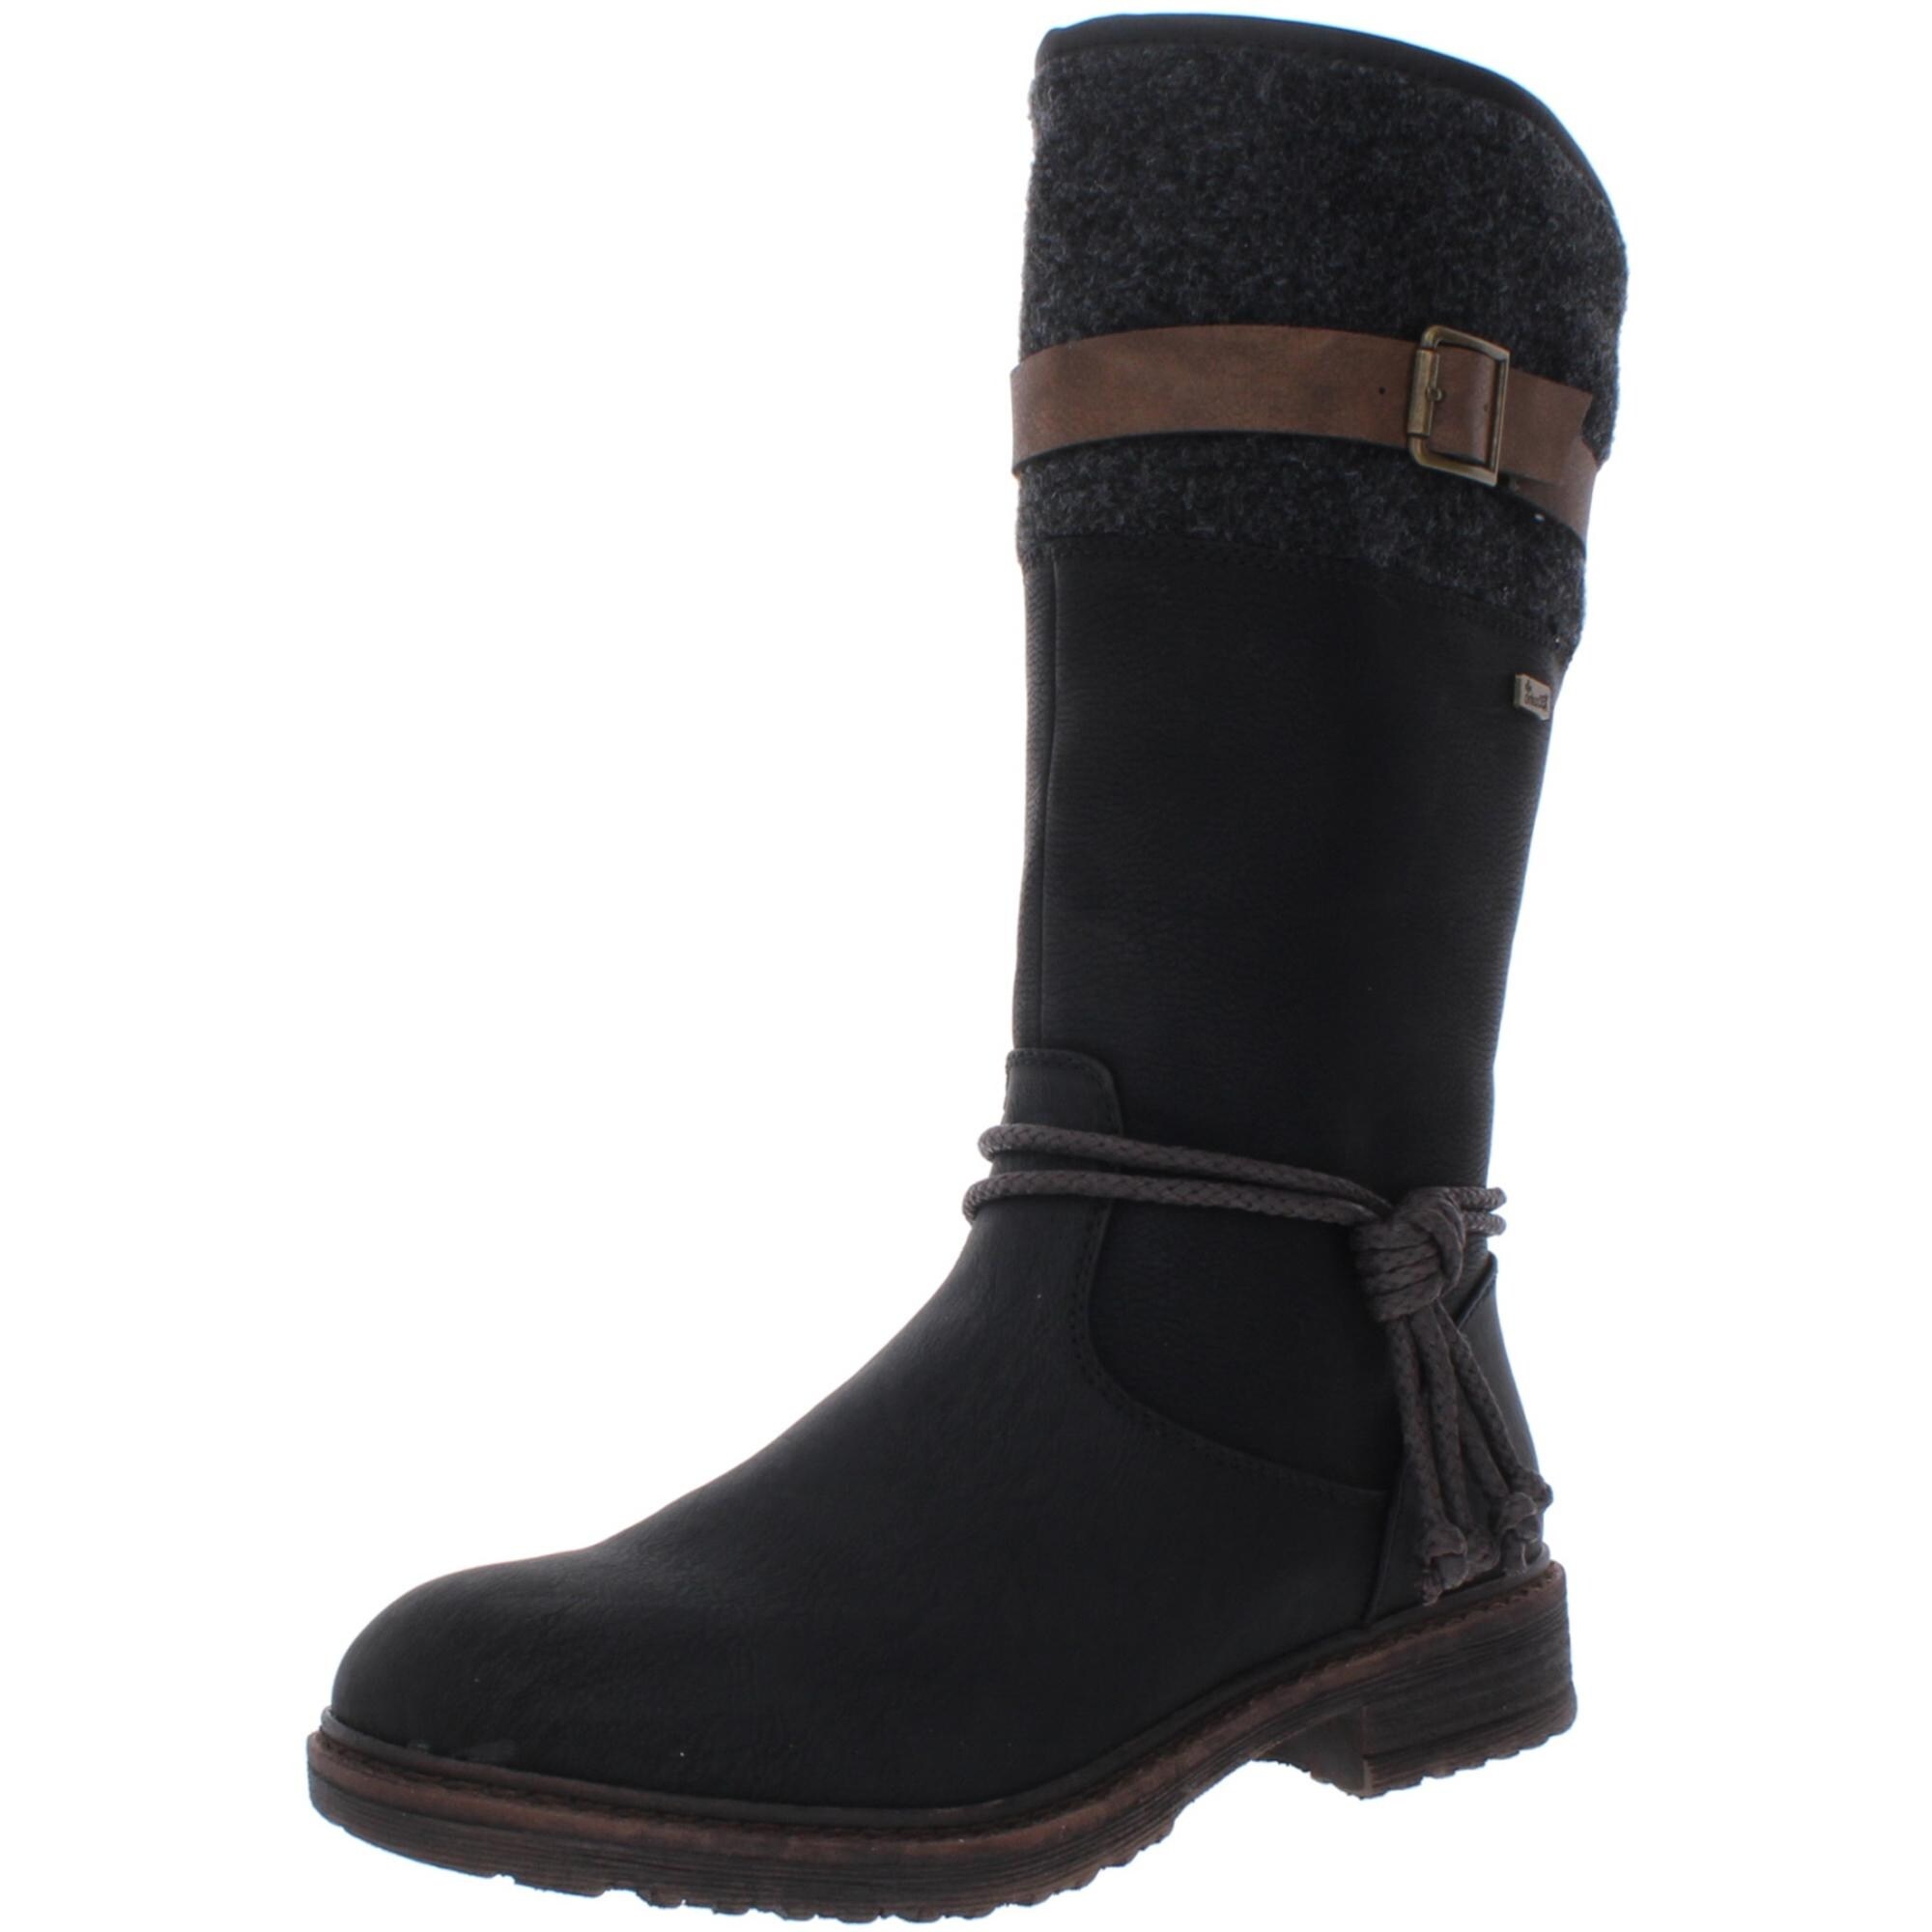 rieker womens winter boots